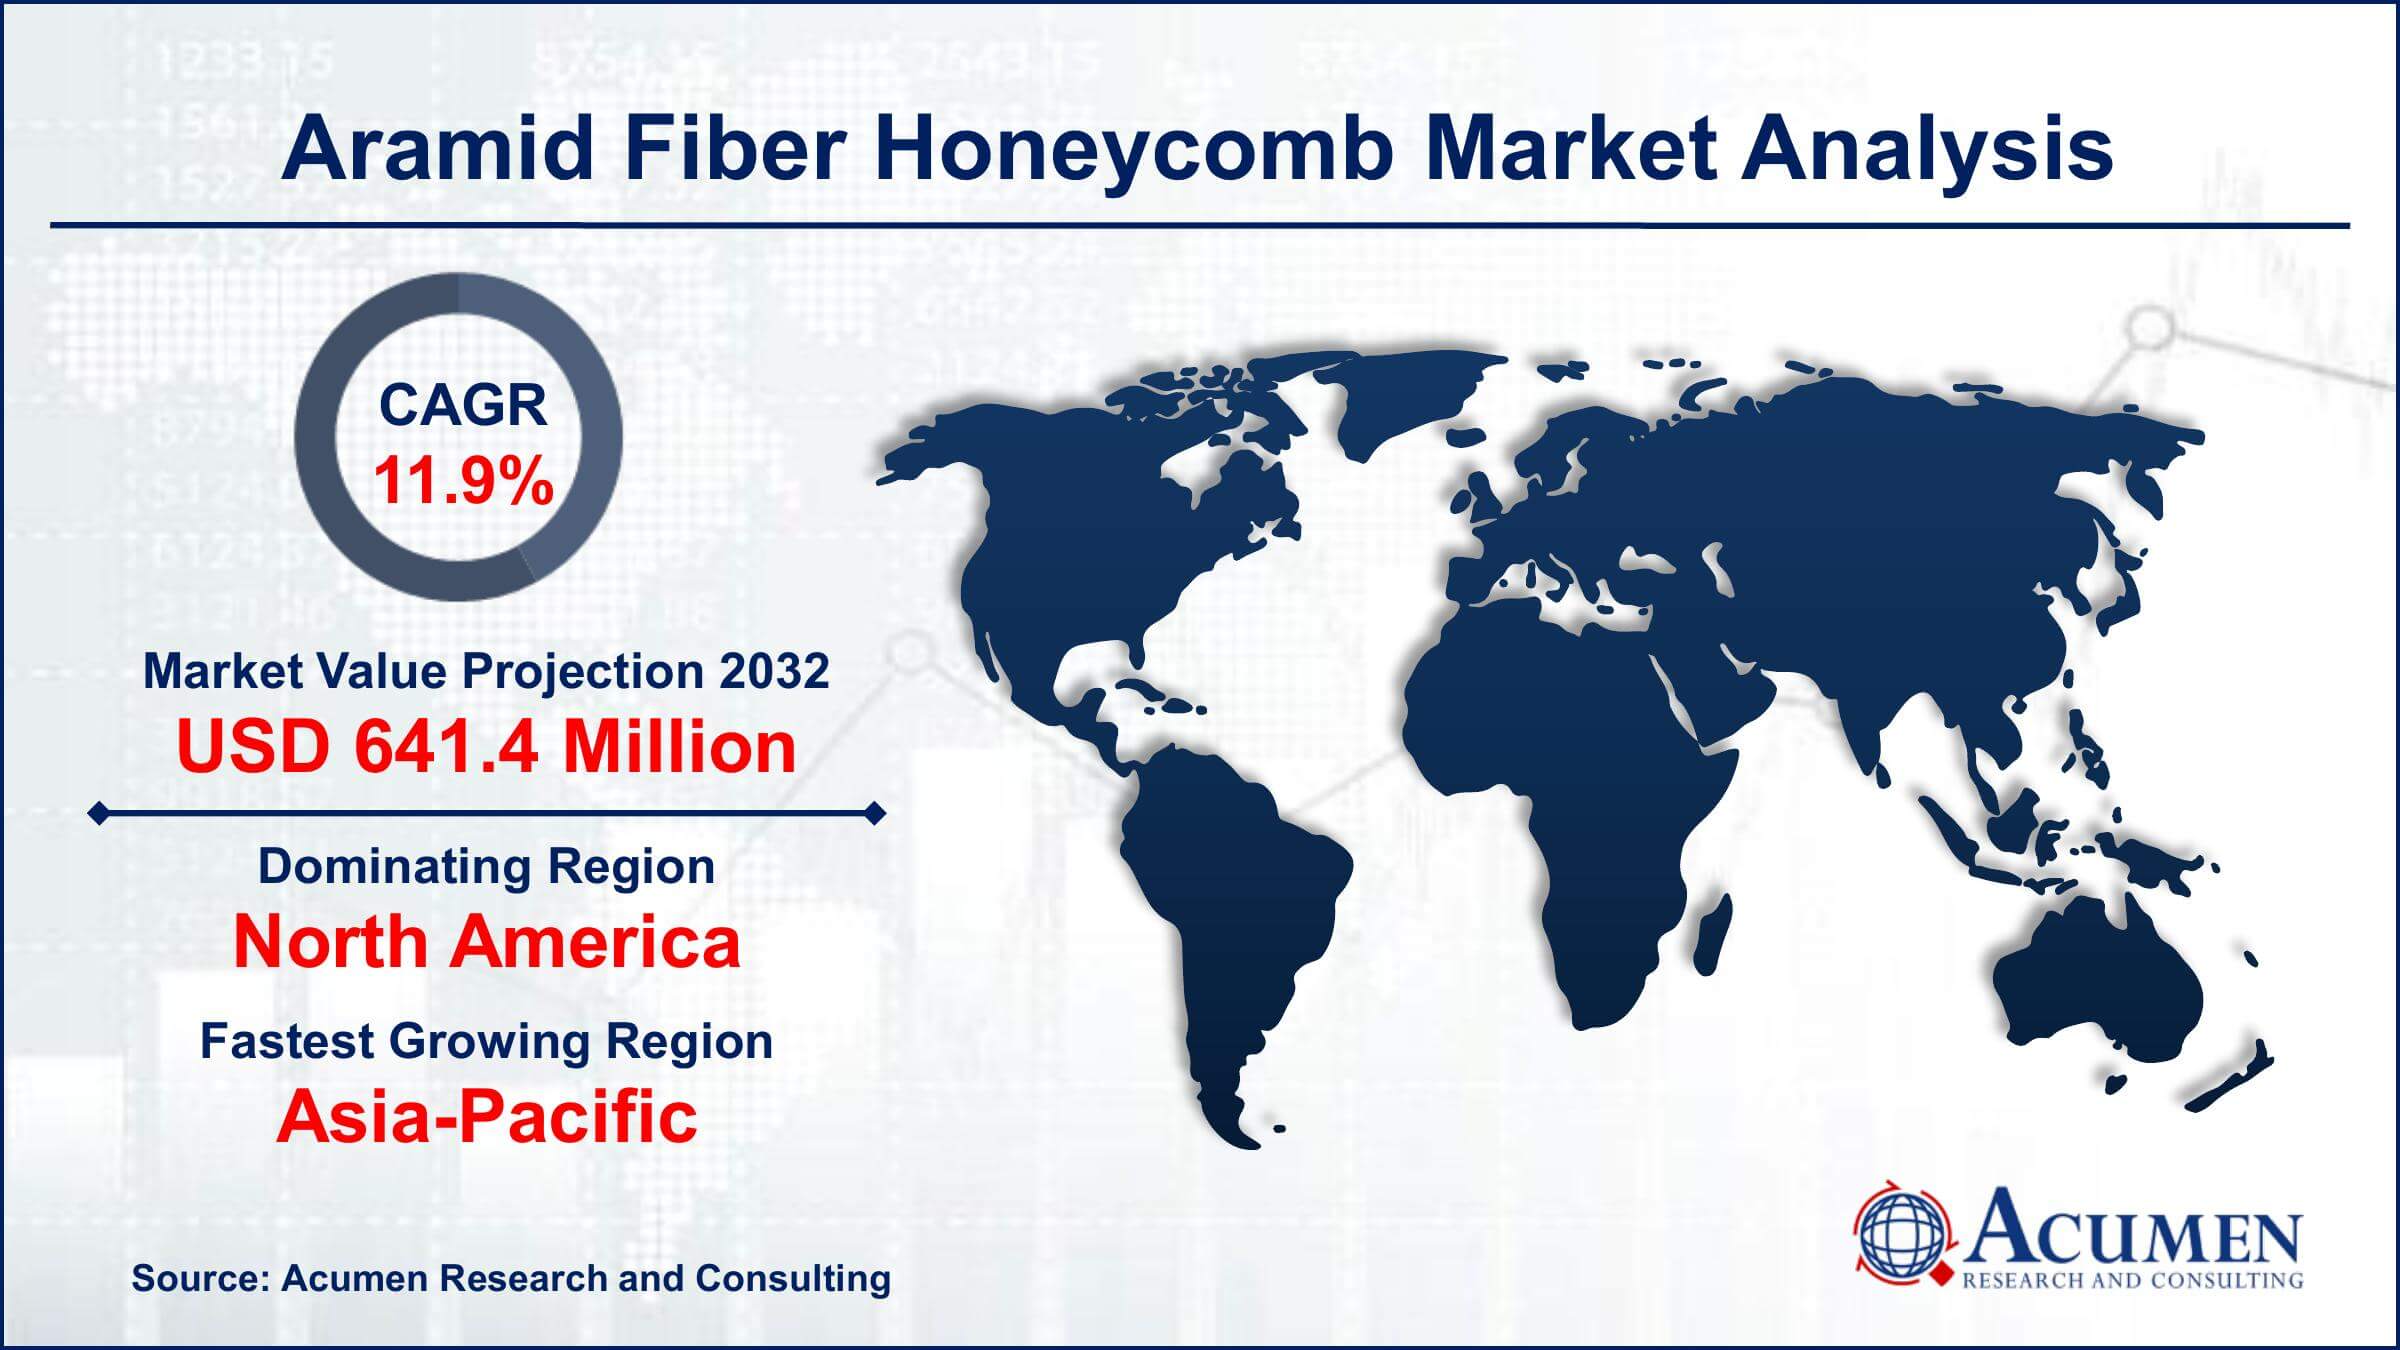 Global Aramid Fiber Honeycomb Market Trends